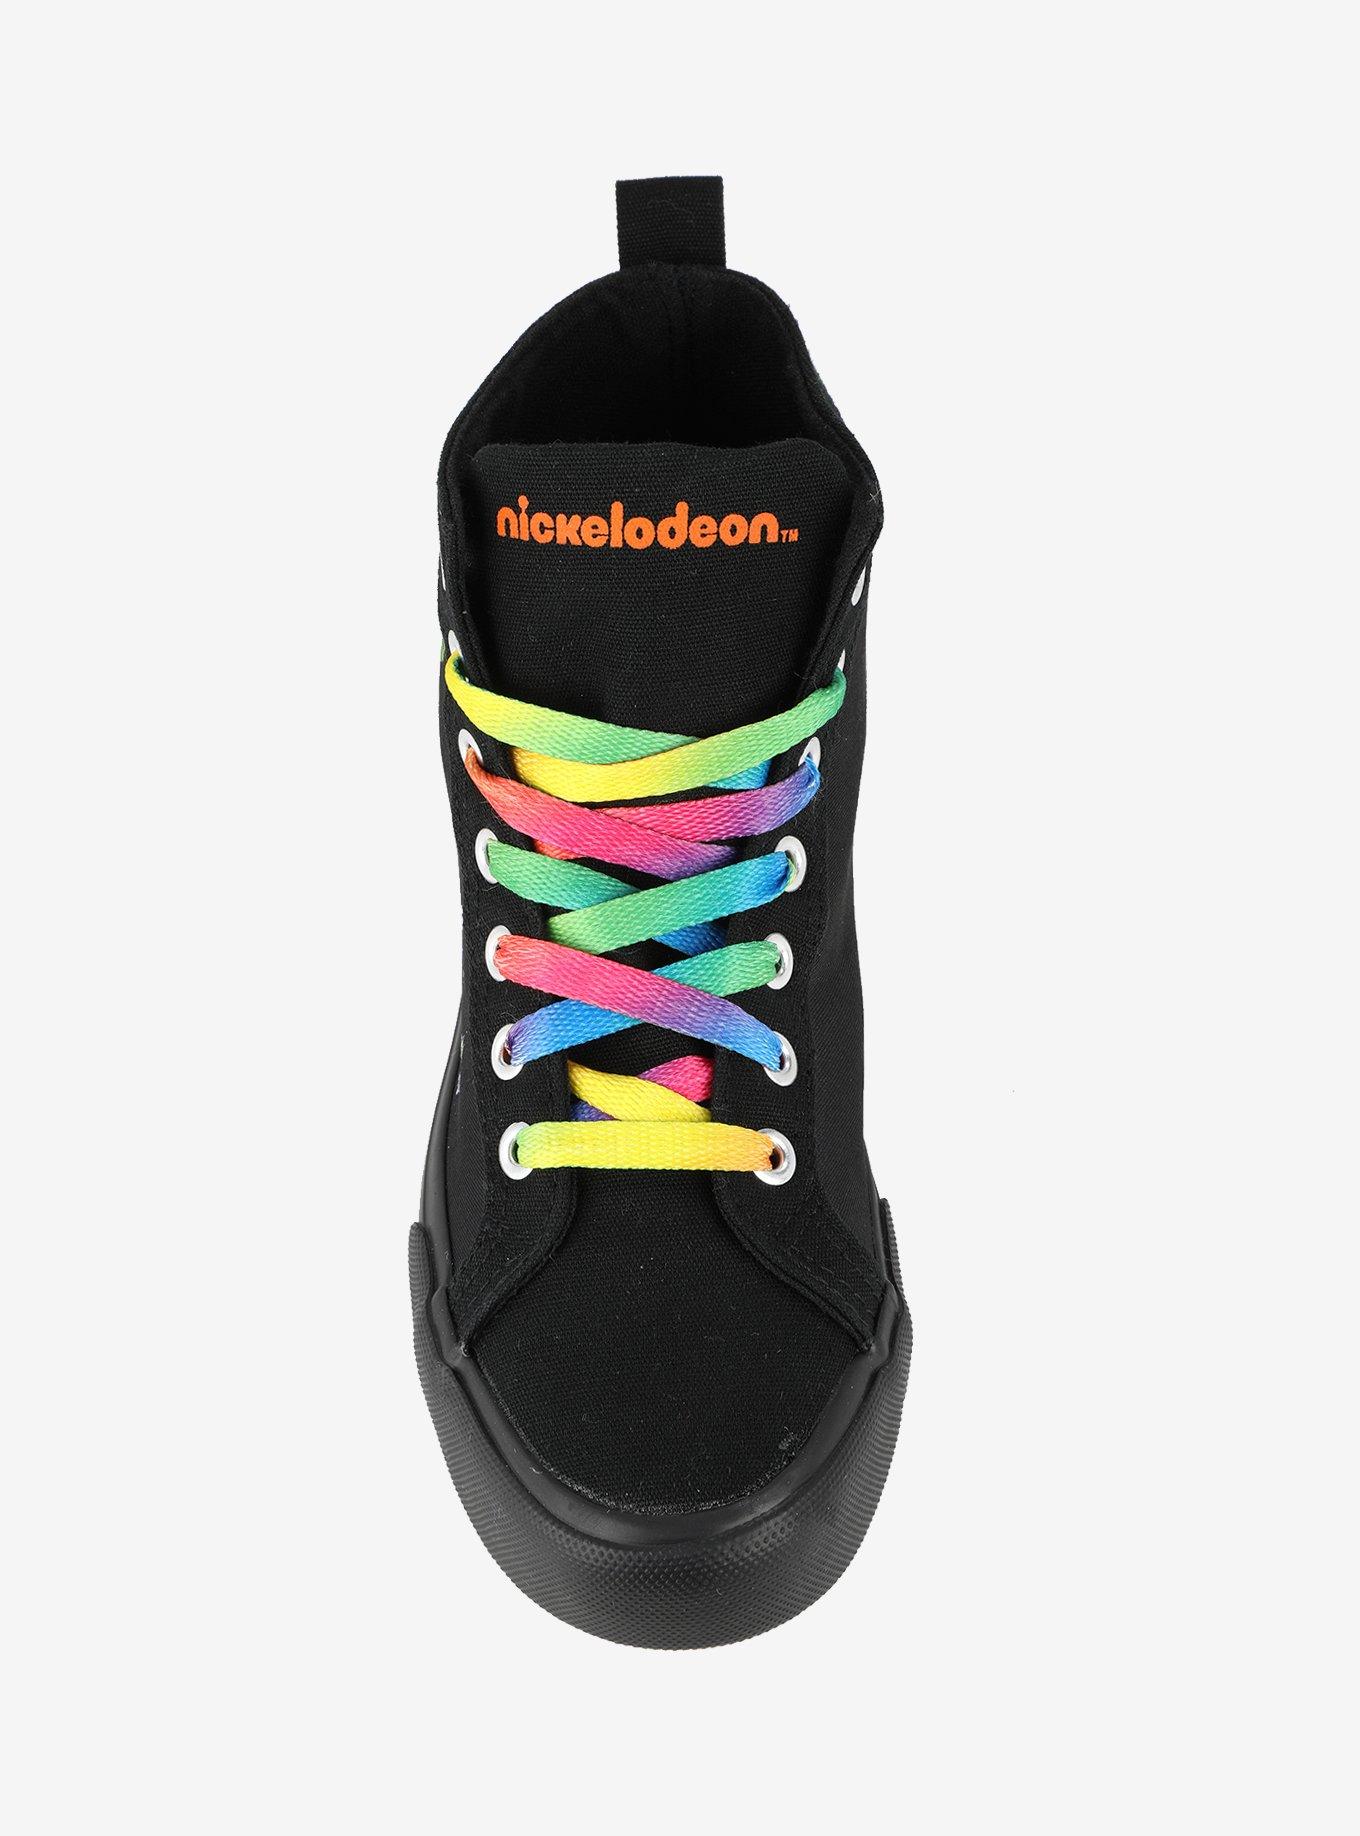 Nickelodeon Retro Hi-Top Sneakers, , alternate